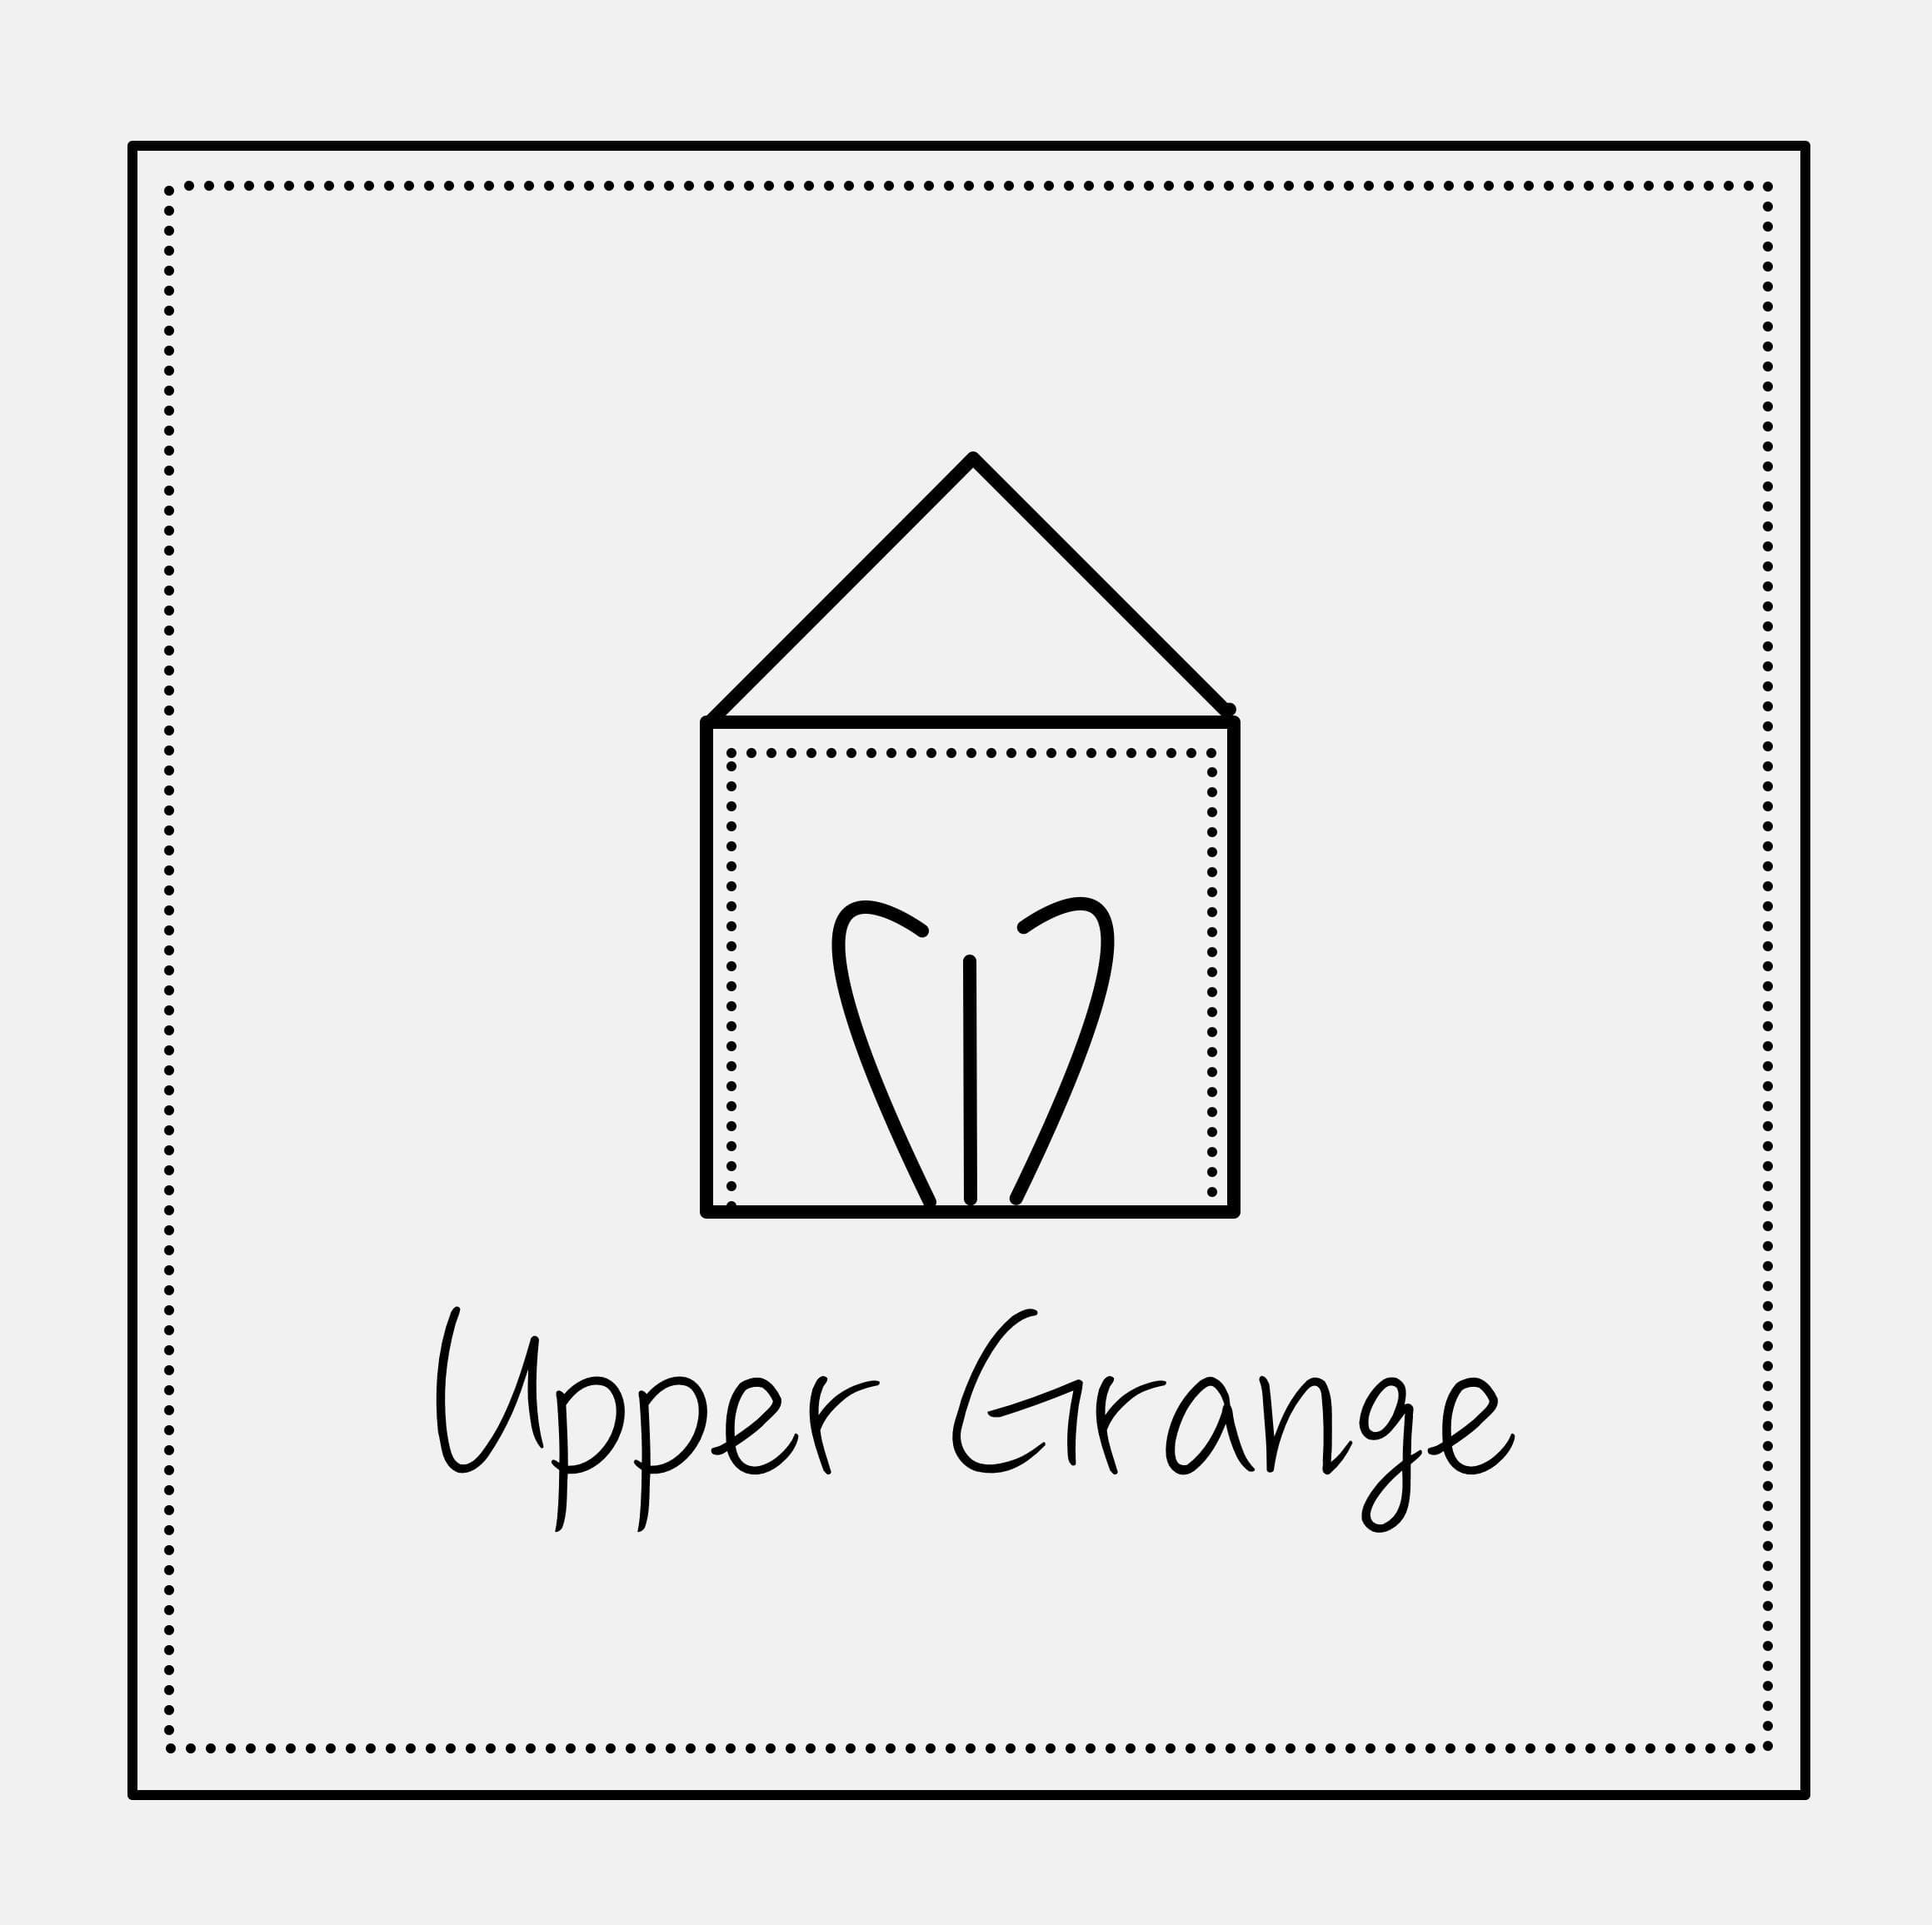 Upper Grange logo